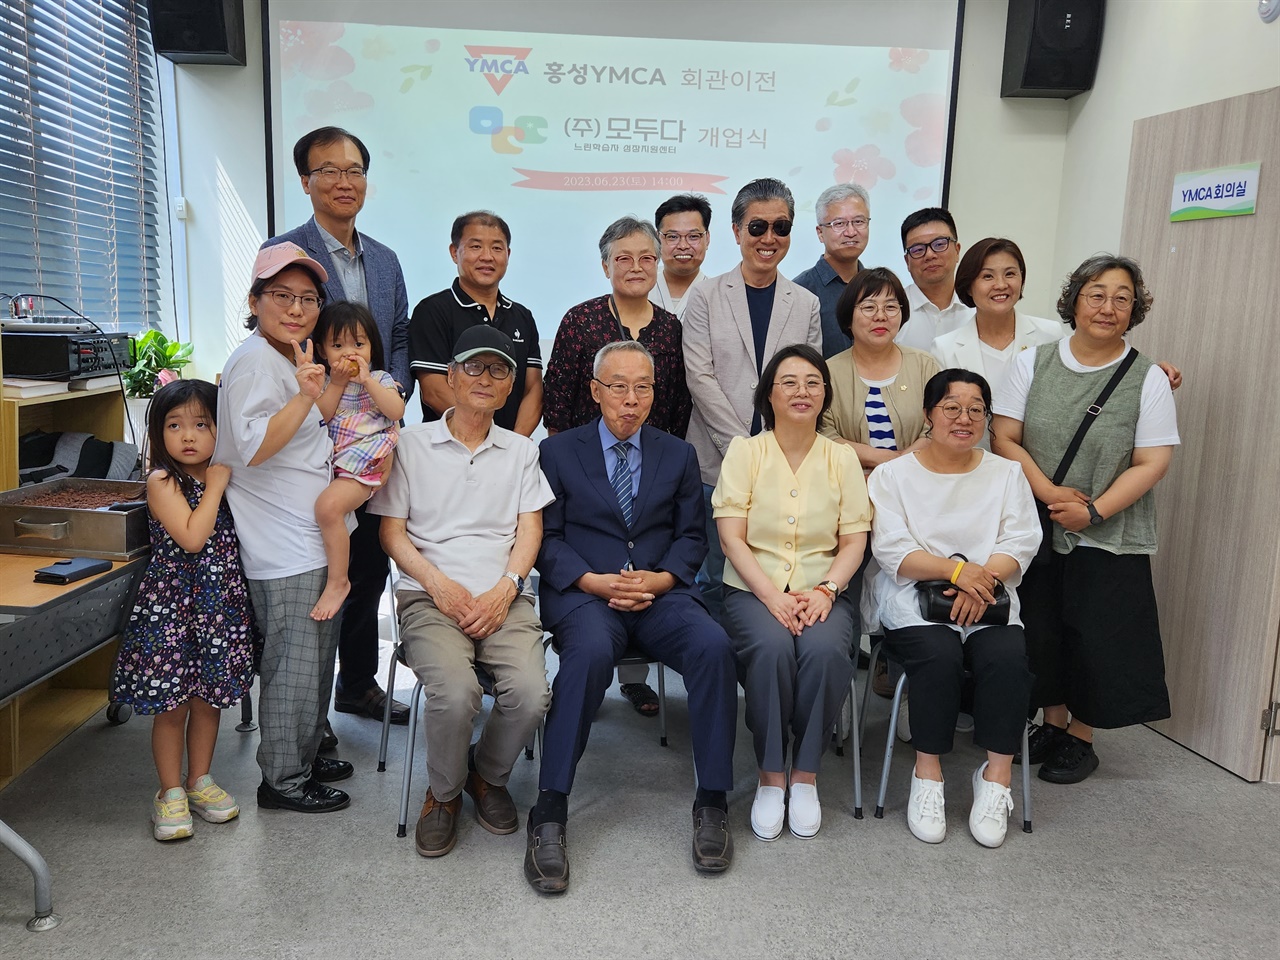 지난 24일 충남 홍성YMCA 회관에서는 사회적 기업 모두다의 개소식이 열렸다. 